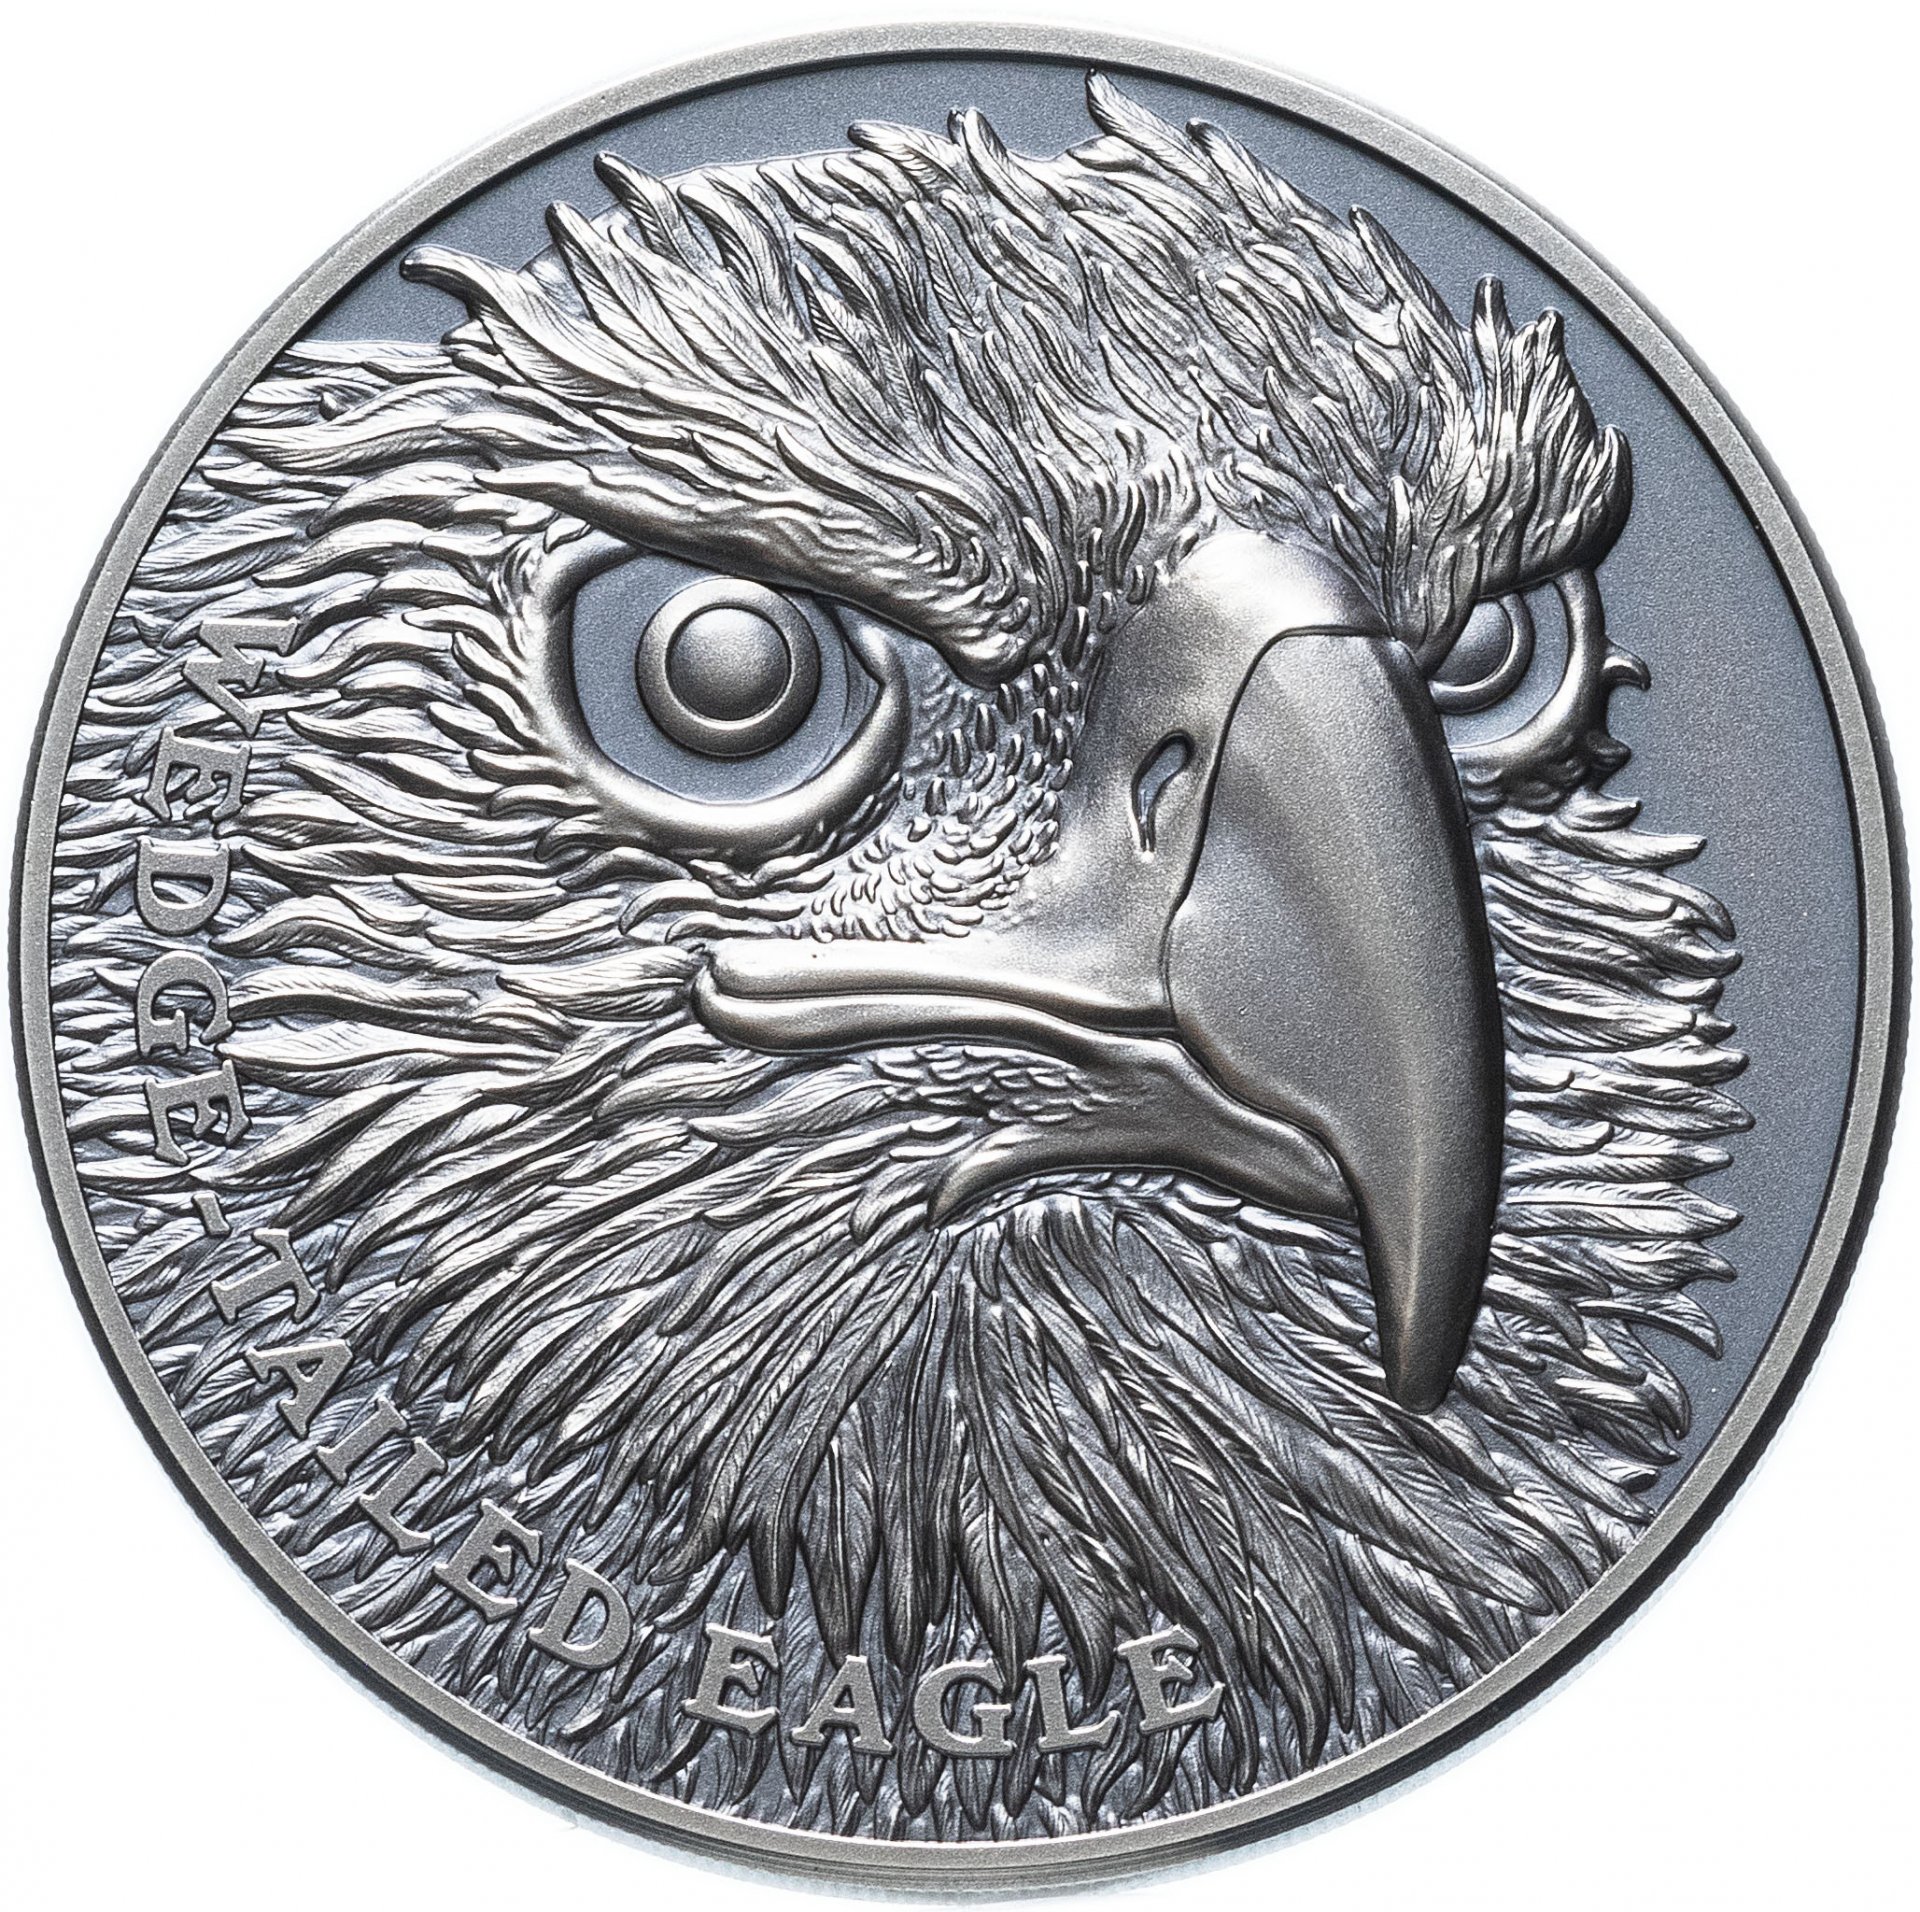 Купить орел 306. Орел на монете. Монетка с орлом с двух сторон. 1 Доллар монета с орлом. Монеты с изображением птиц.